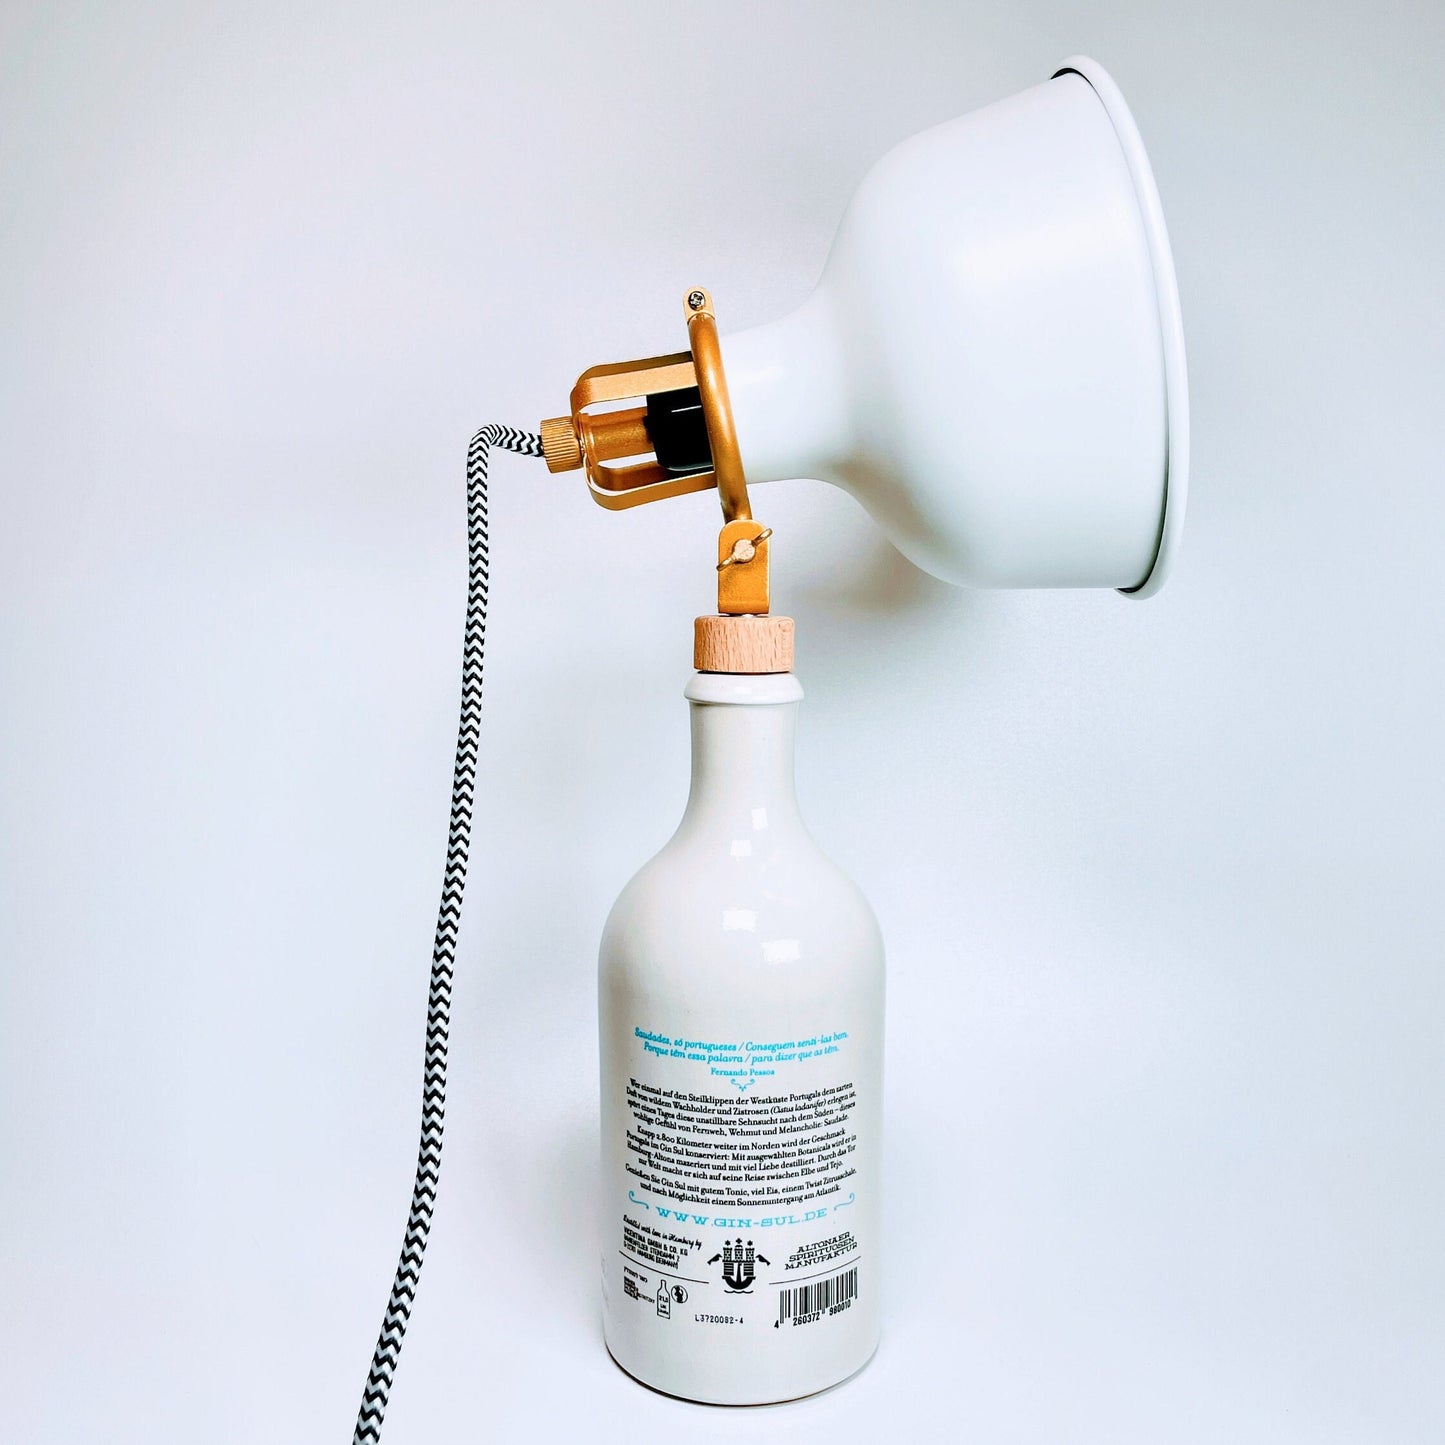 Gin Sul Vintage-Lampe | Handgemachte nachhaltige Tischlampe aus Gin Sul | Einzigartige Geschenkidee | Retro Deko-Licht | Upcycling Leuchte